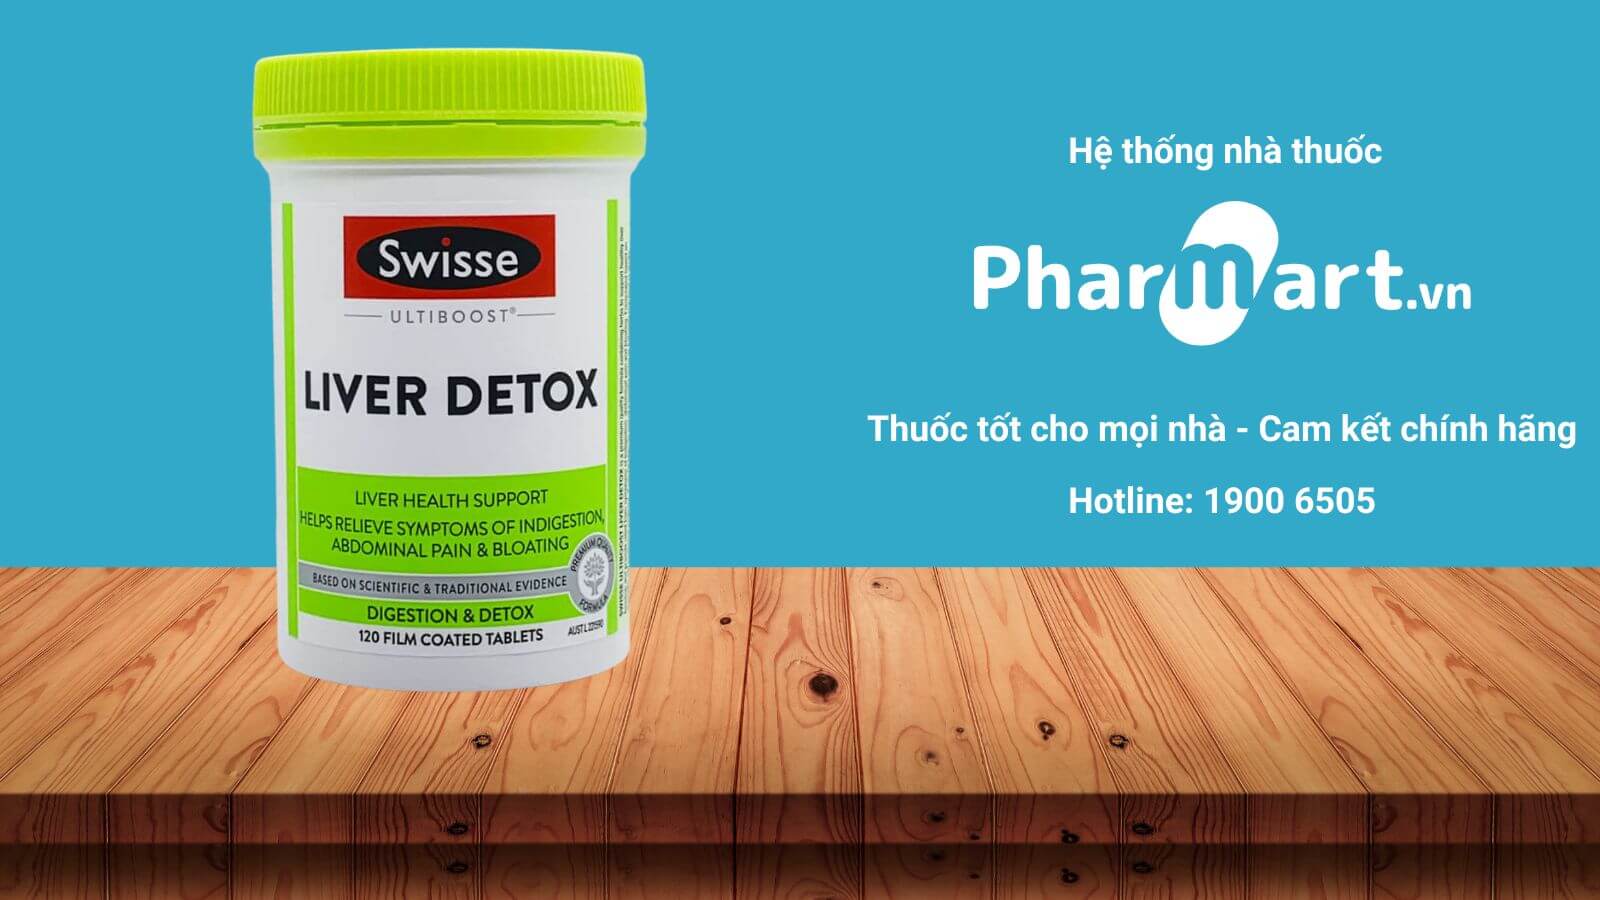 Mua ngay Bổ gan Ultiboost Liver Detox Swisse chính hãng tại Pharmart.vn.